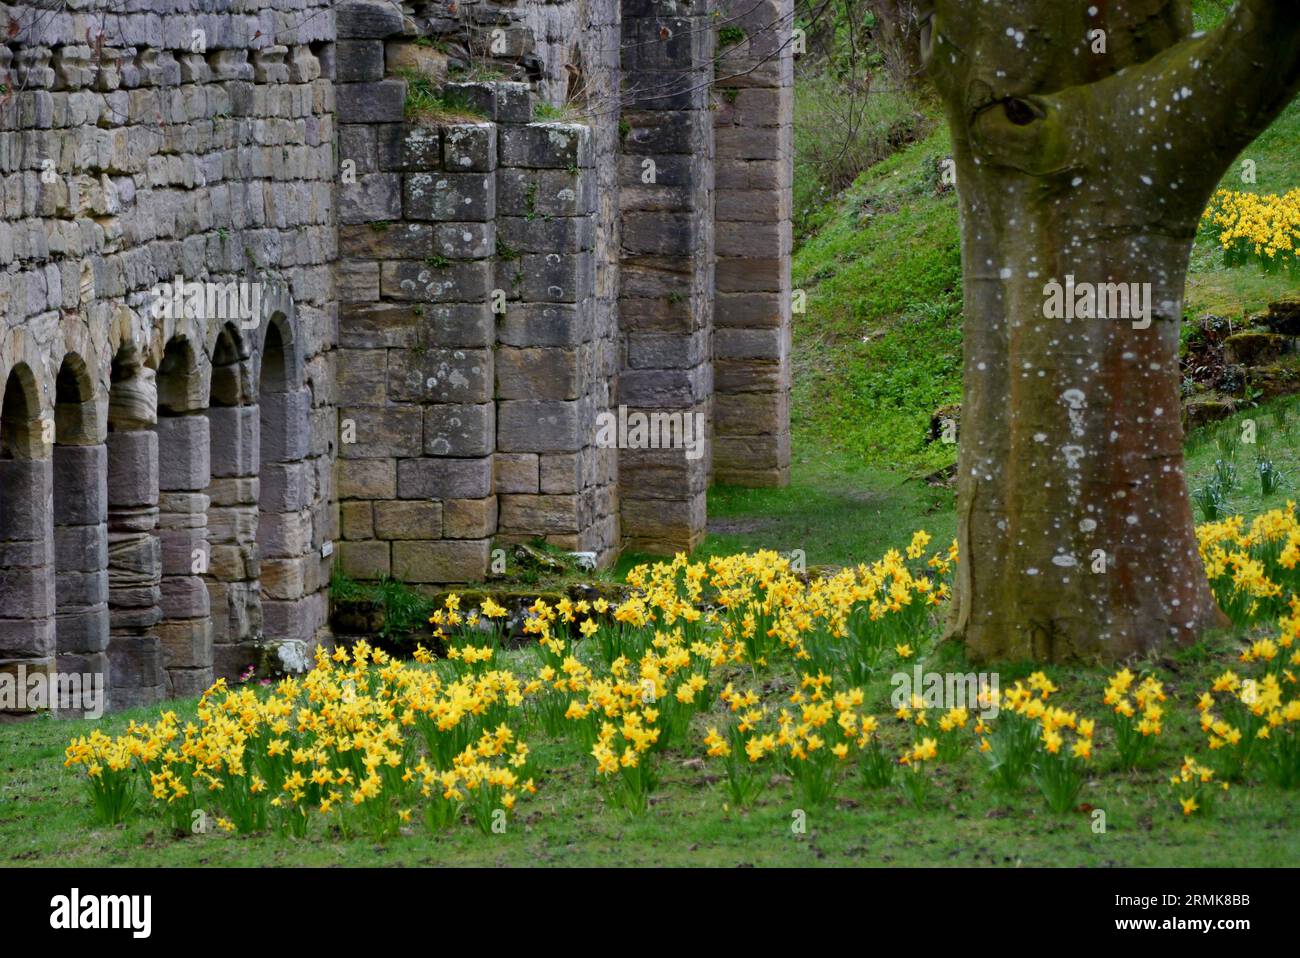 Narcisi primaverili di Stone Arches nelle rovine dell'abbazia di Fountains, il monastero cistercense medievale nel North Yorkshire, Inghilterra, Regno Unito. Foto Stock